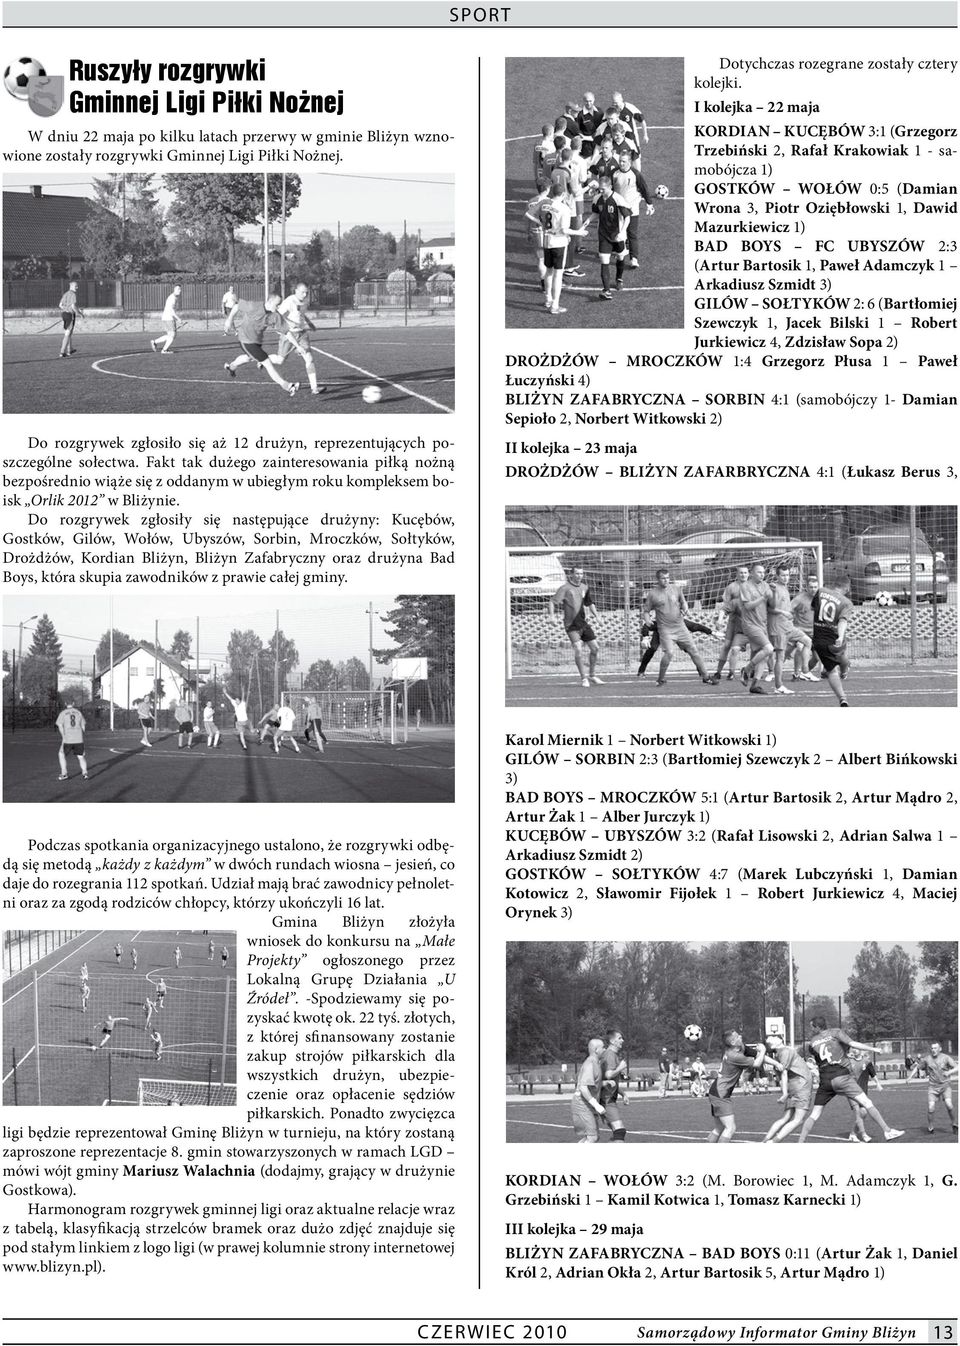 Fakt tak dużego zainteresowania piłką nożną bezpośrednio wiąże się z oddanym w ubiegłym roku kompleksem boisk Orlik 2012 w Bliżynie.